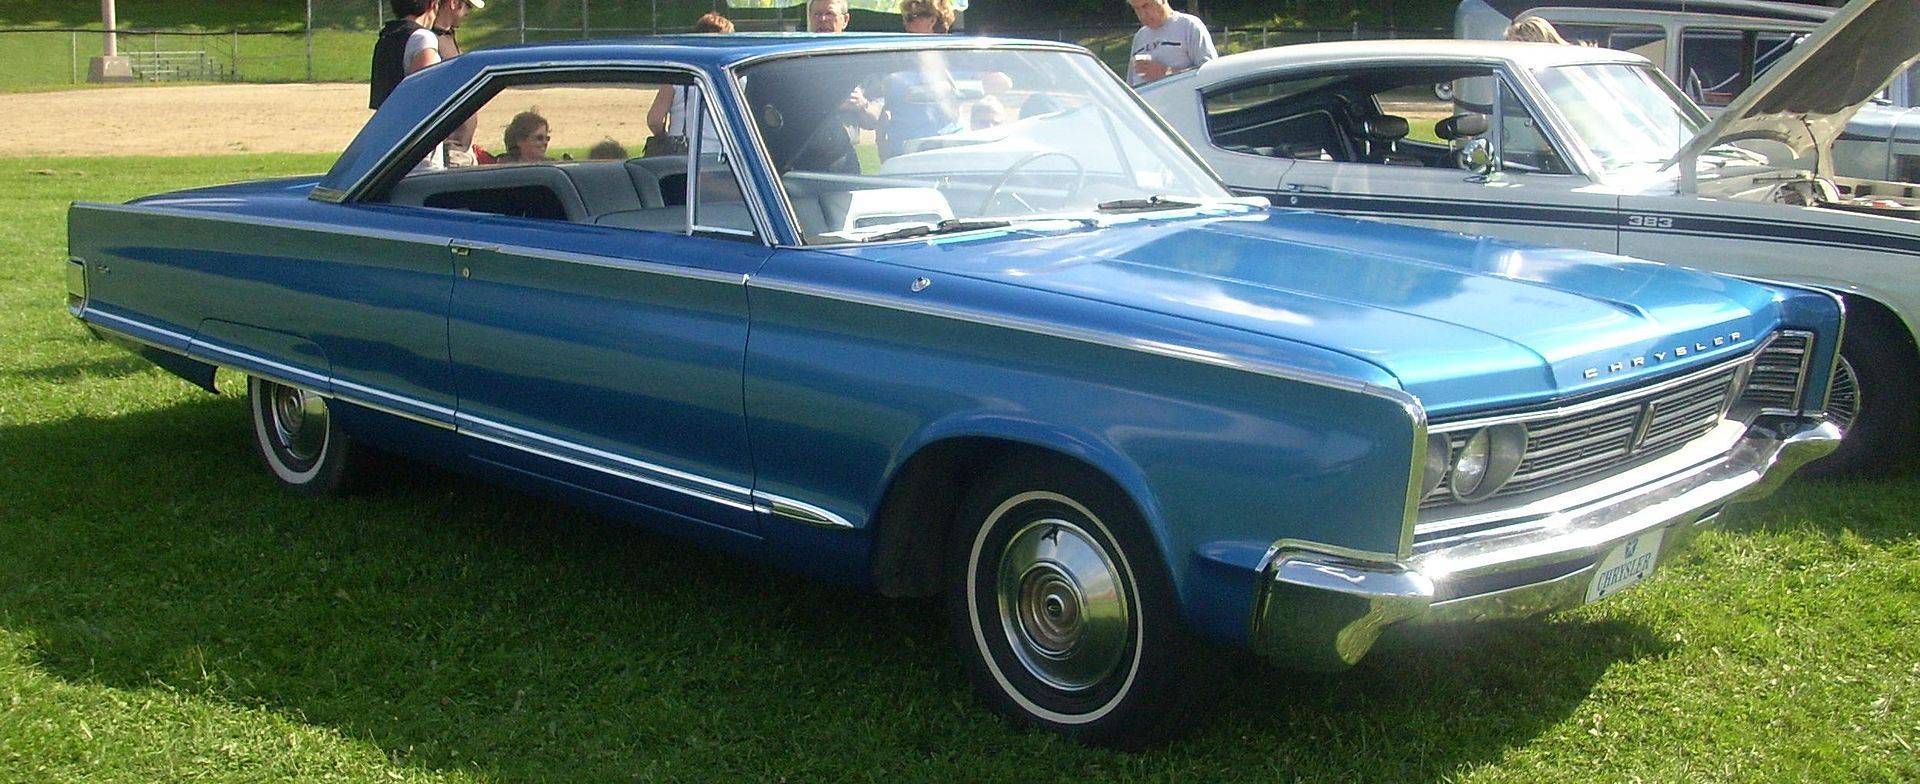 '66_Chrysler_Windsor_Coupe_.JPG